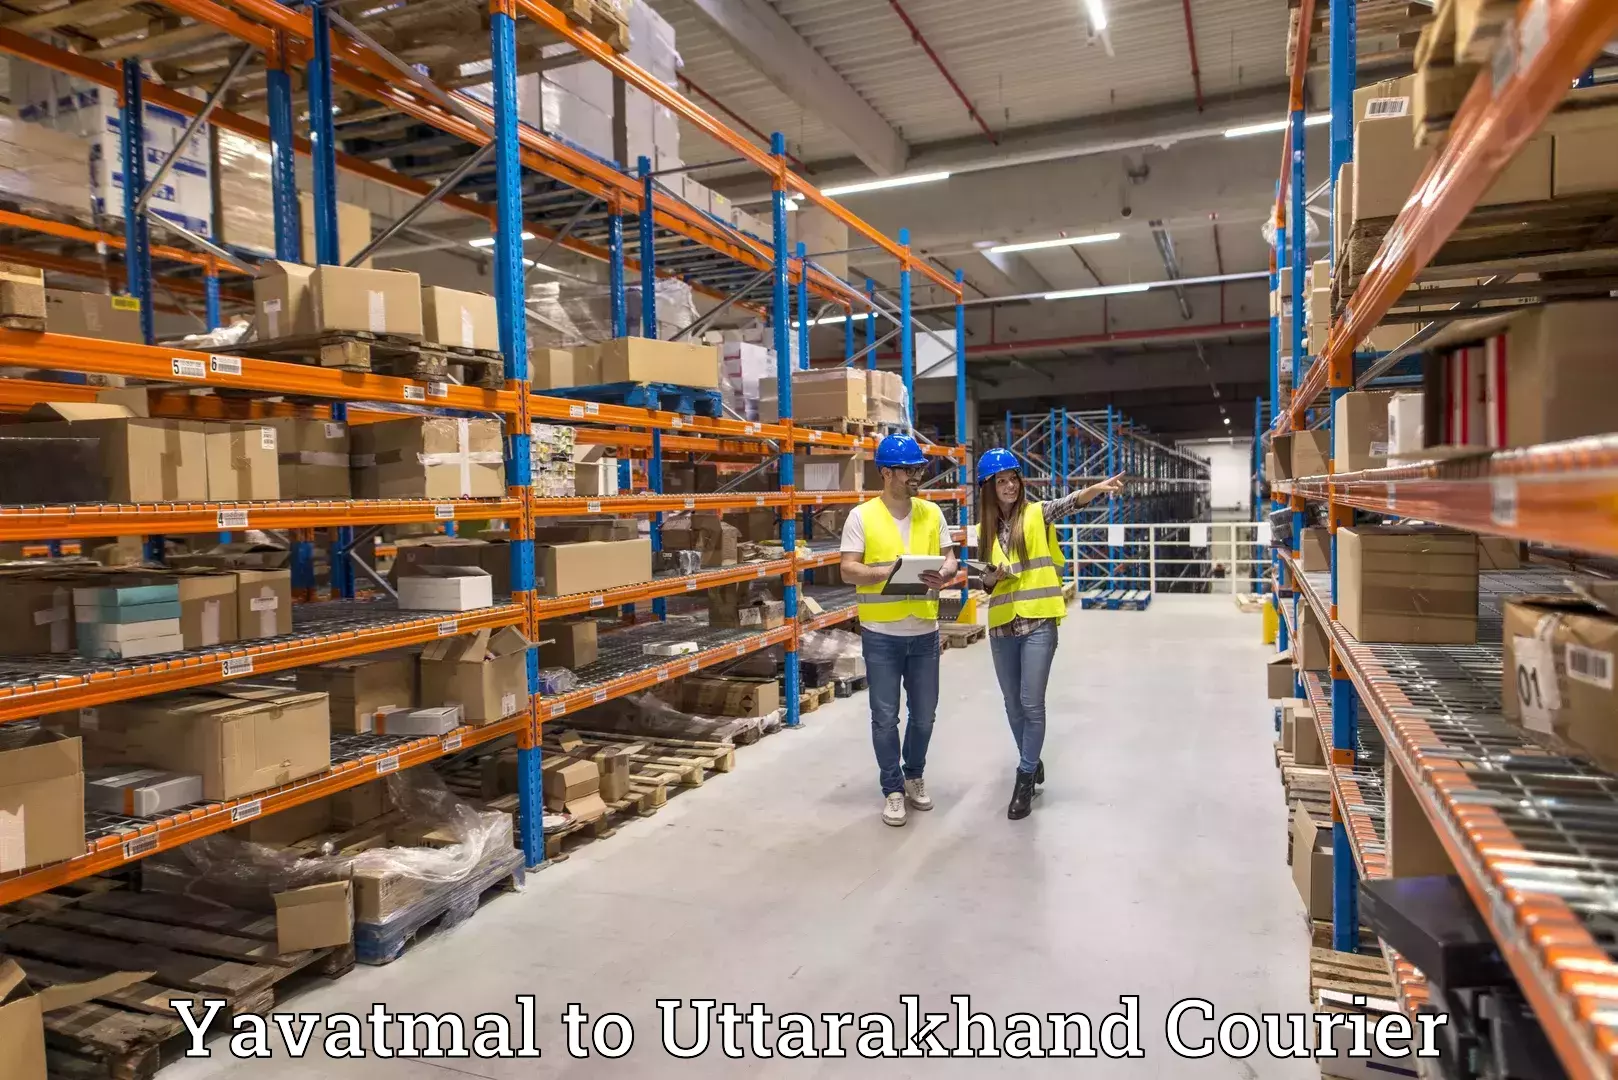 Cargo delivery service Yavatmal to Uttarakhand